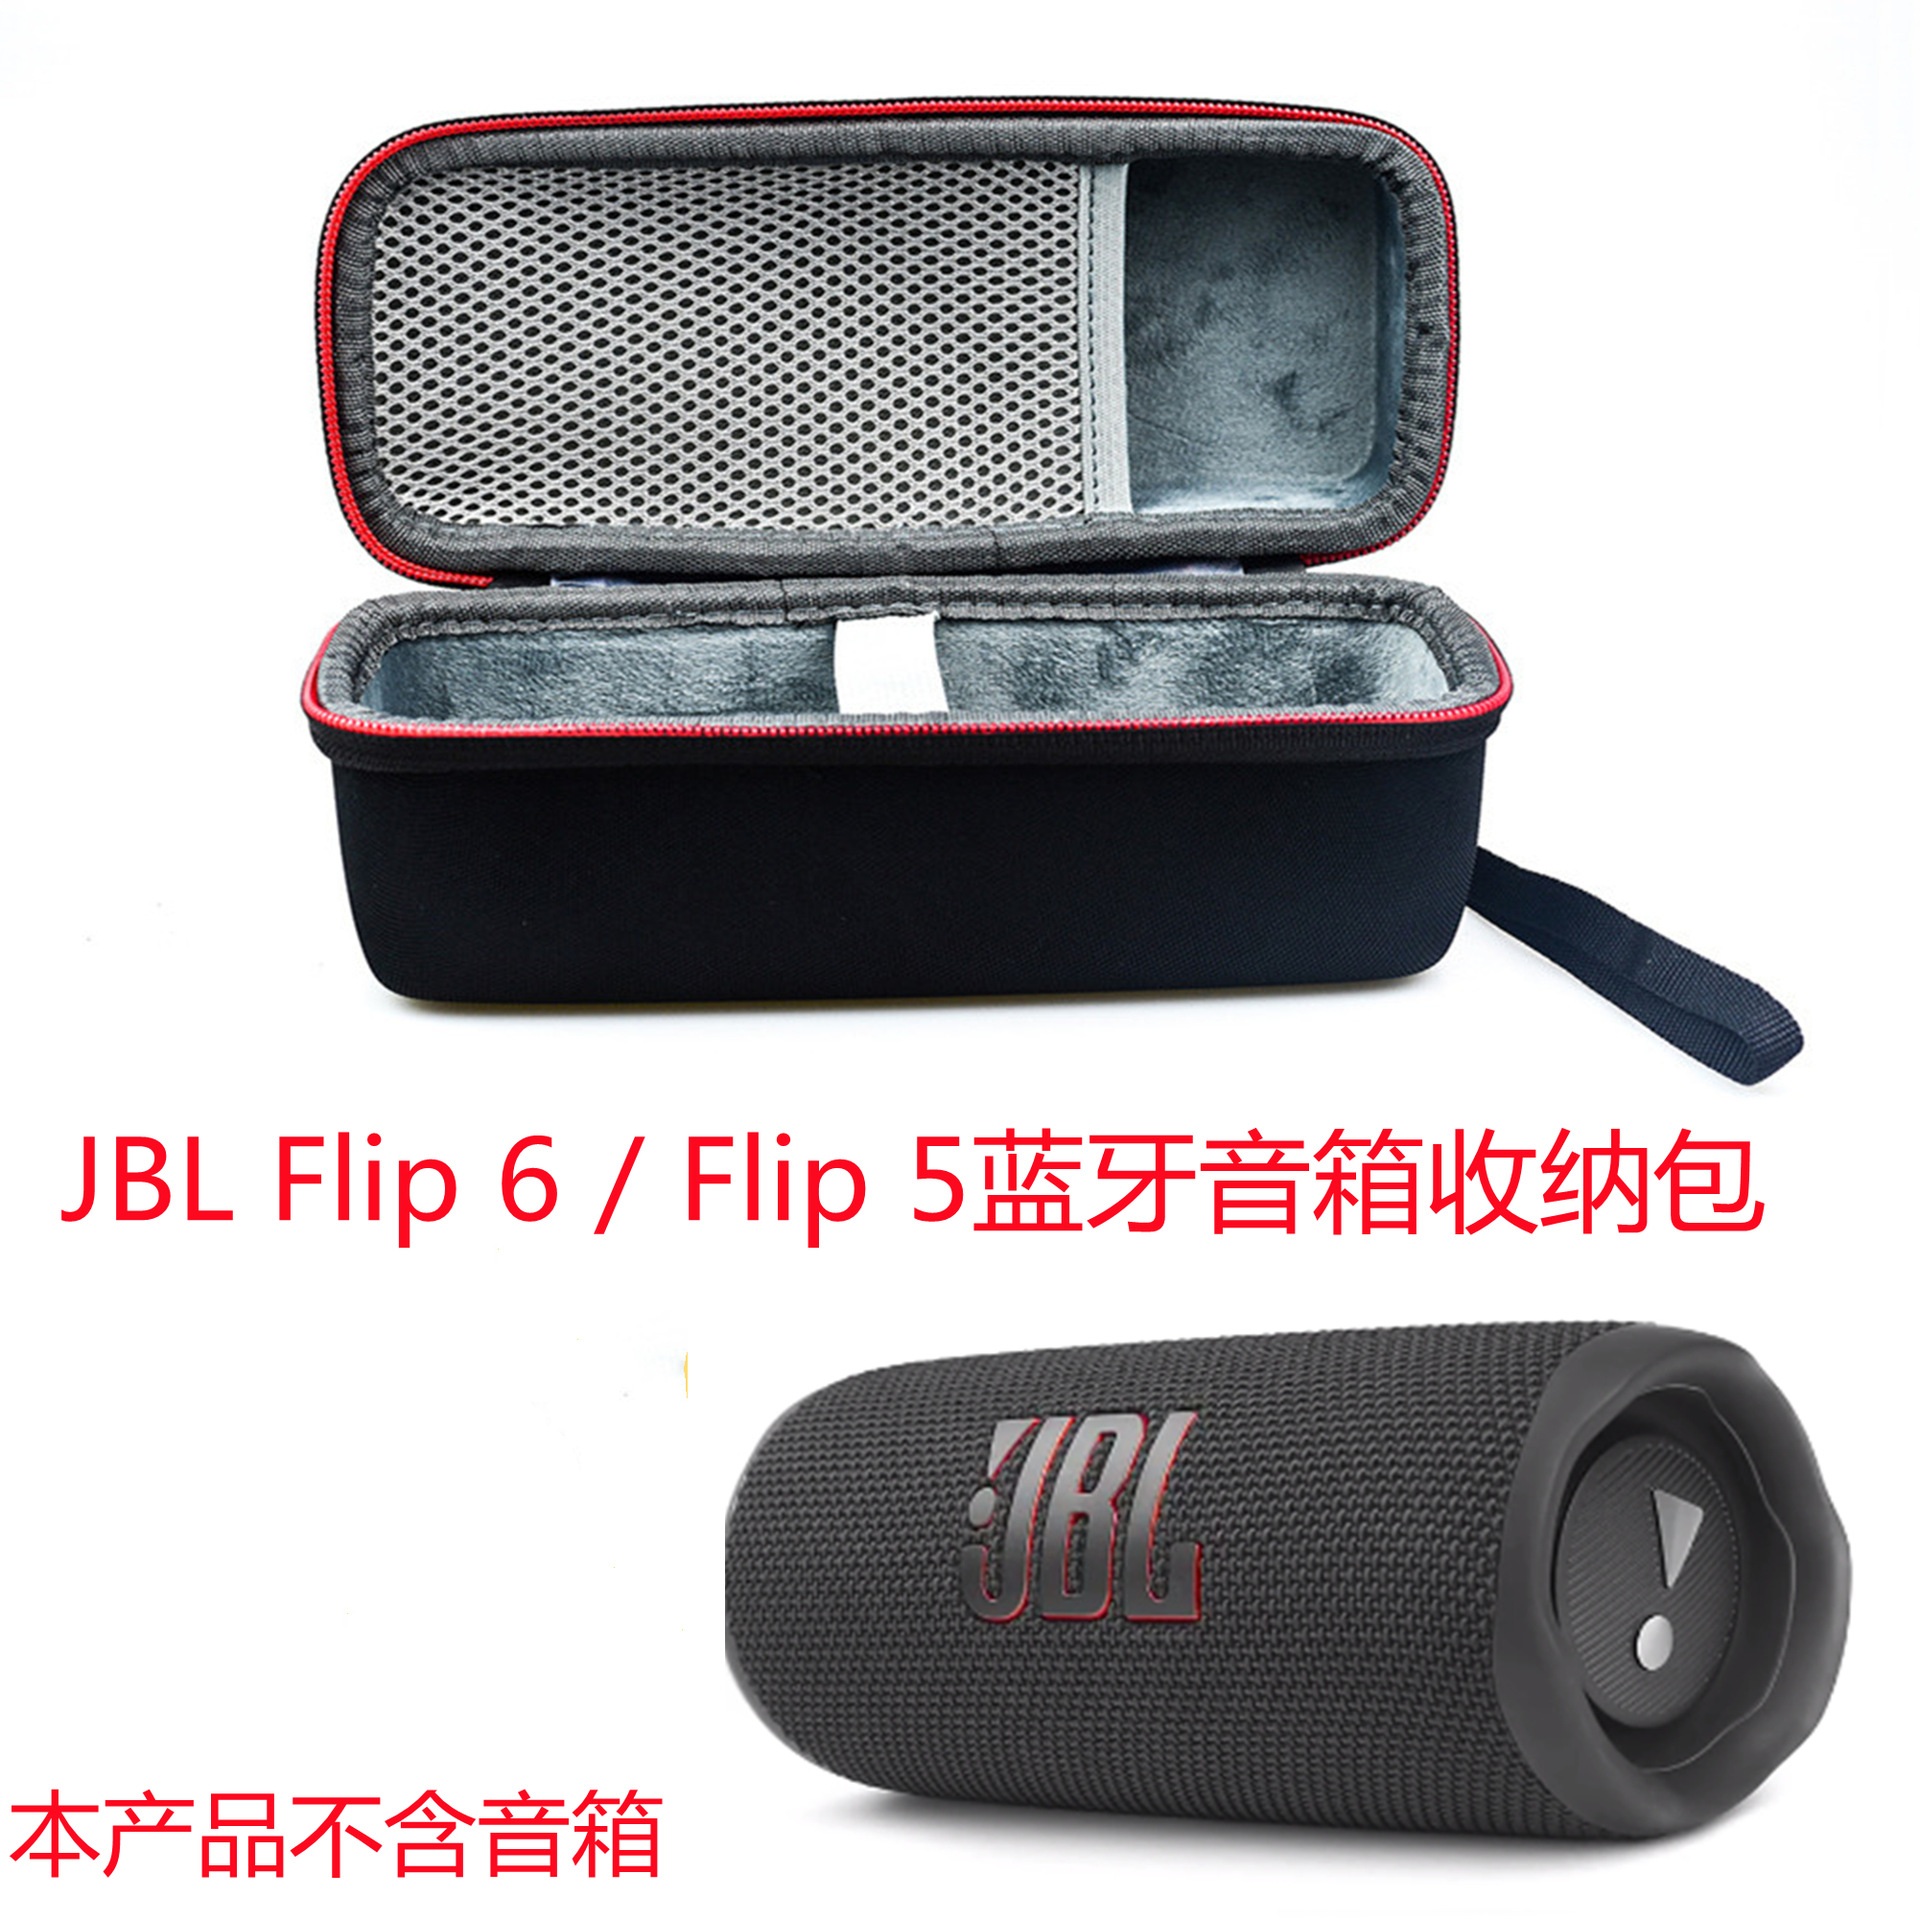 适用于JBL Flip 6万花筒蓝牙音箱便携收纳包户外随身包硬壳保护套